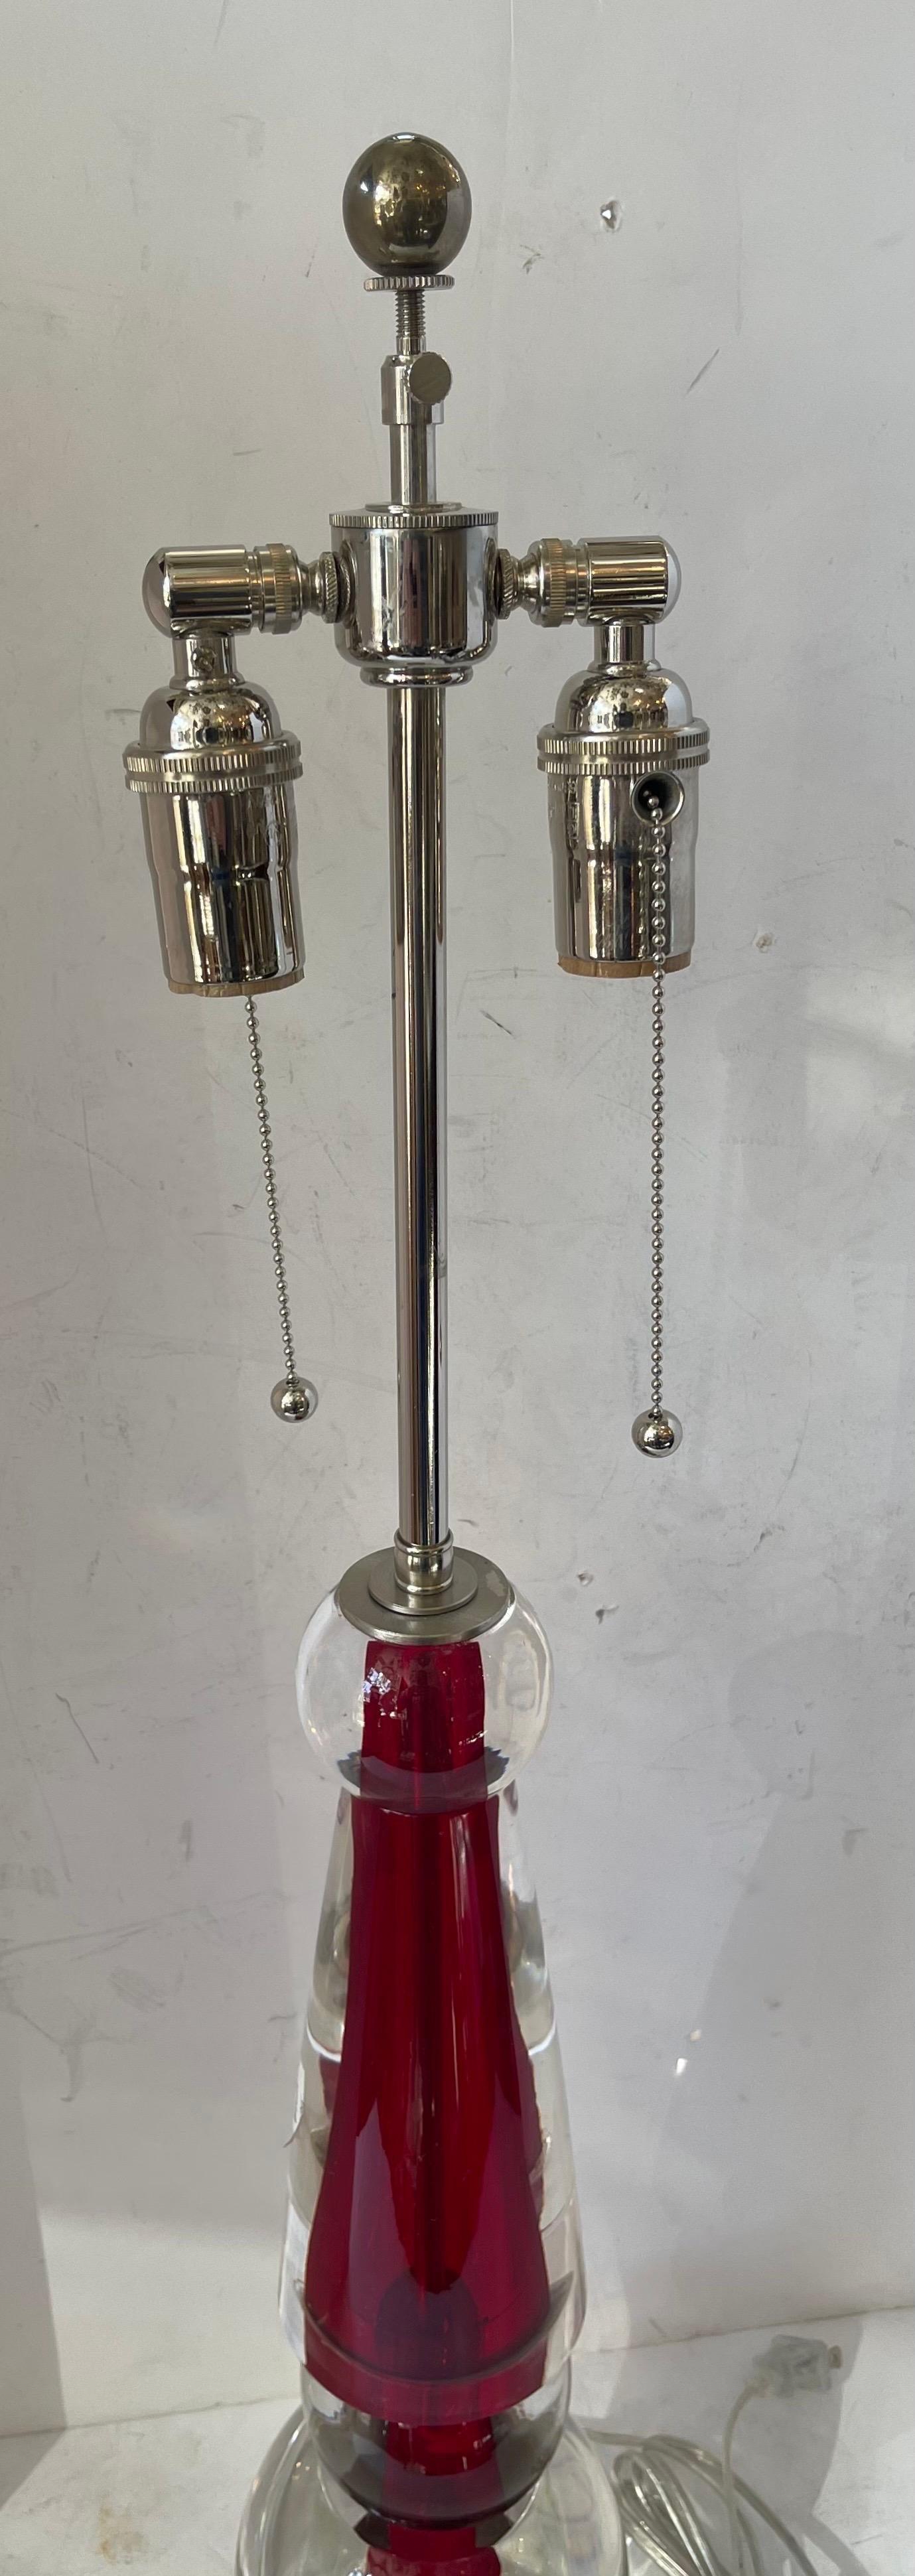 Eine wunderbare Mid Century Modern Murano / venezianischen Lorin Marsh Rot Klarglas Tischlampe Rewired mit zwei Edison Nickel-Fassungen.
Original Showroom Aufkleber noch mit Listenpreis von $ 4.495 beigefügt
Auf der Unterseite steht der Aufkleber: 